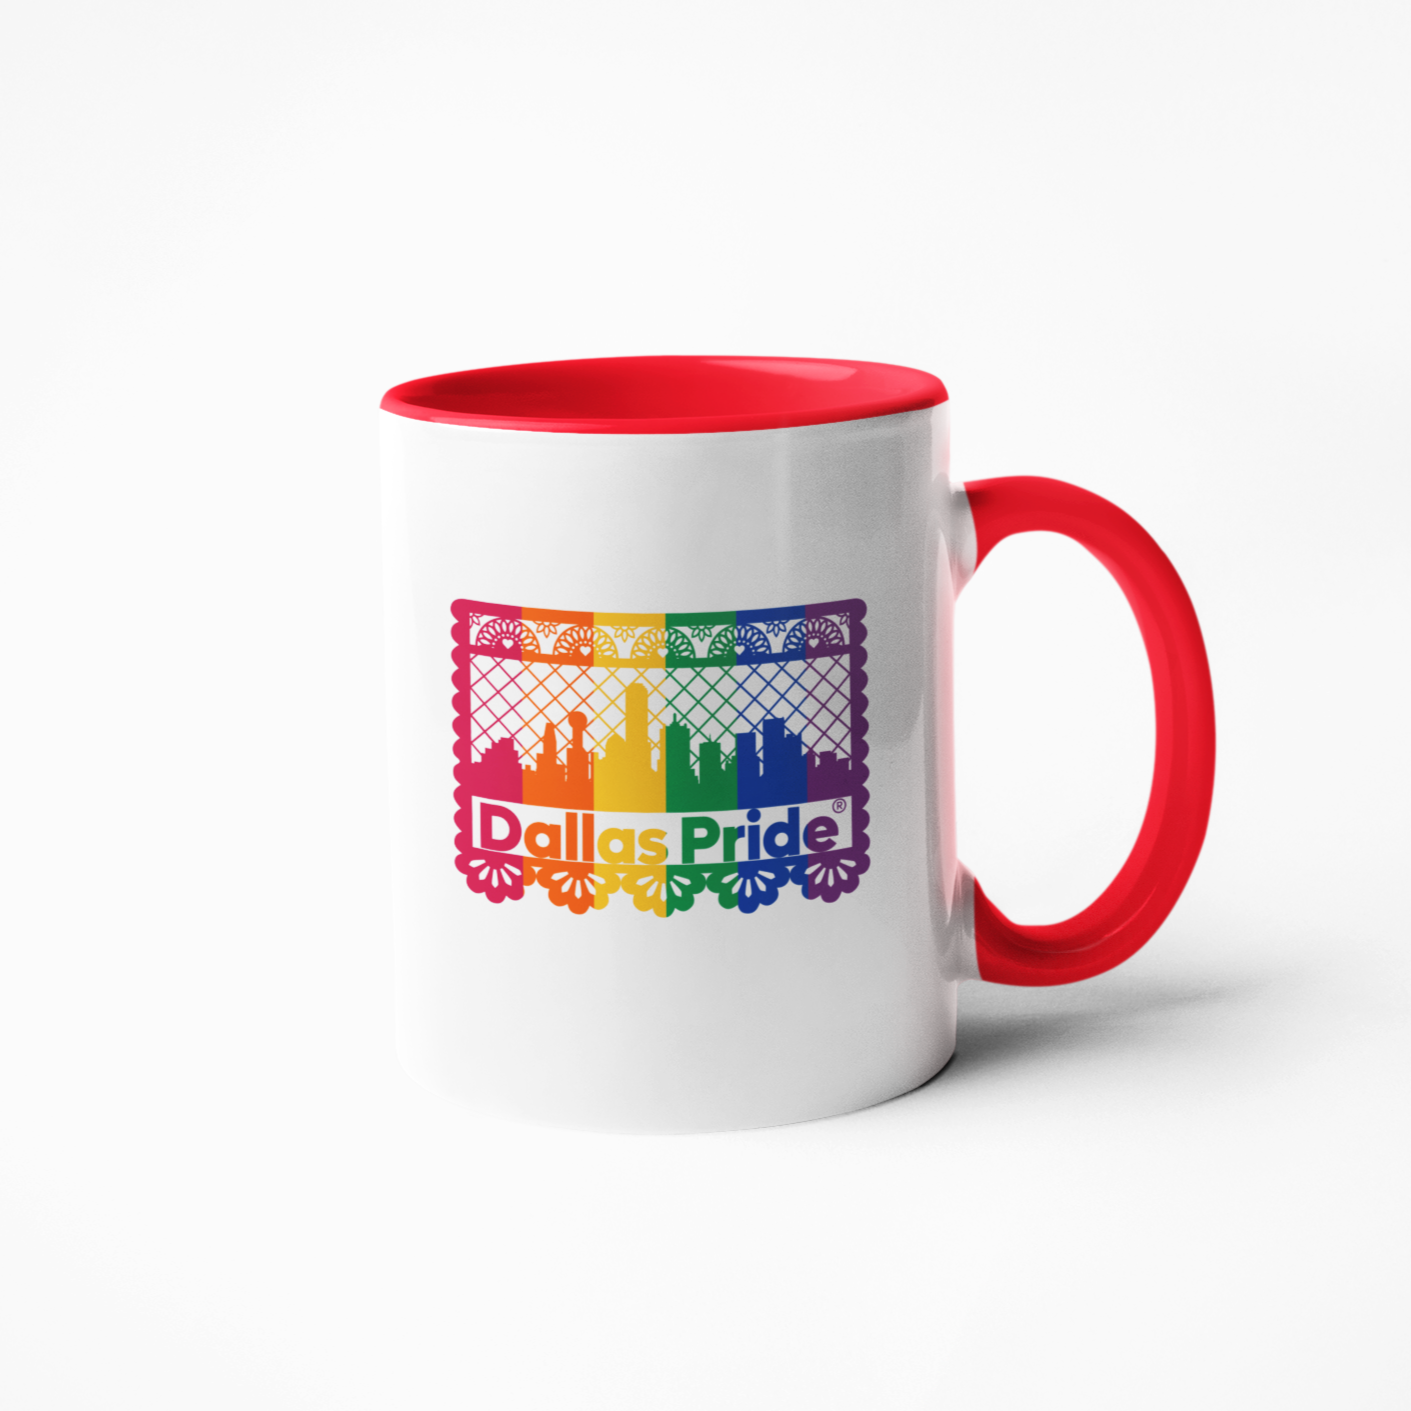 Official Dallas Pride - Papel Picado Mug